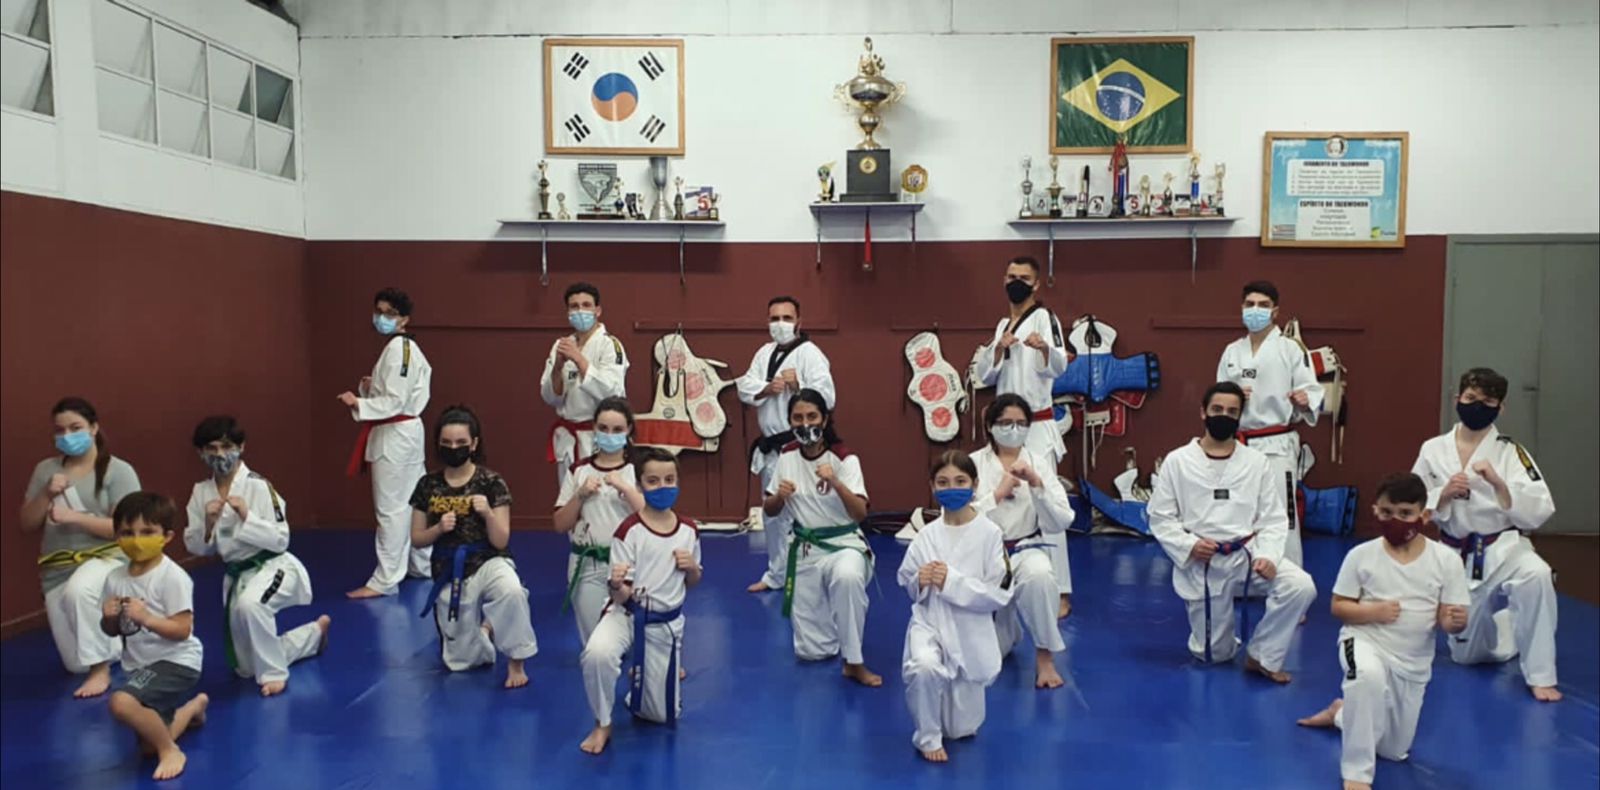 Venha participar das Aulas de Taekwondo do Juventus!